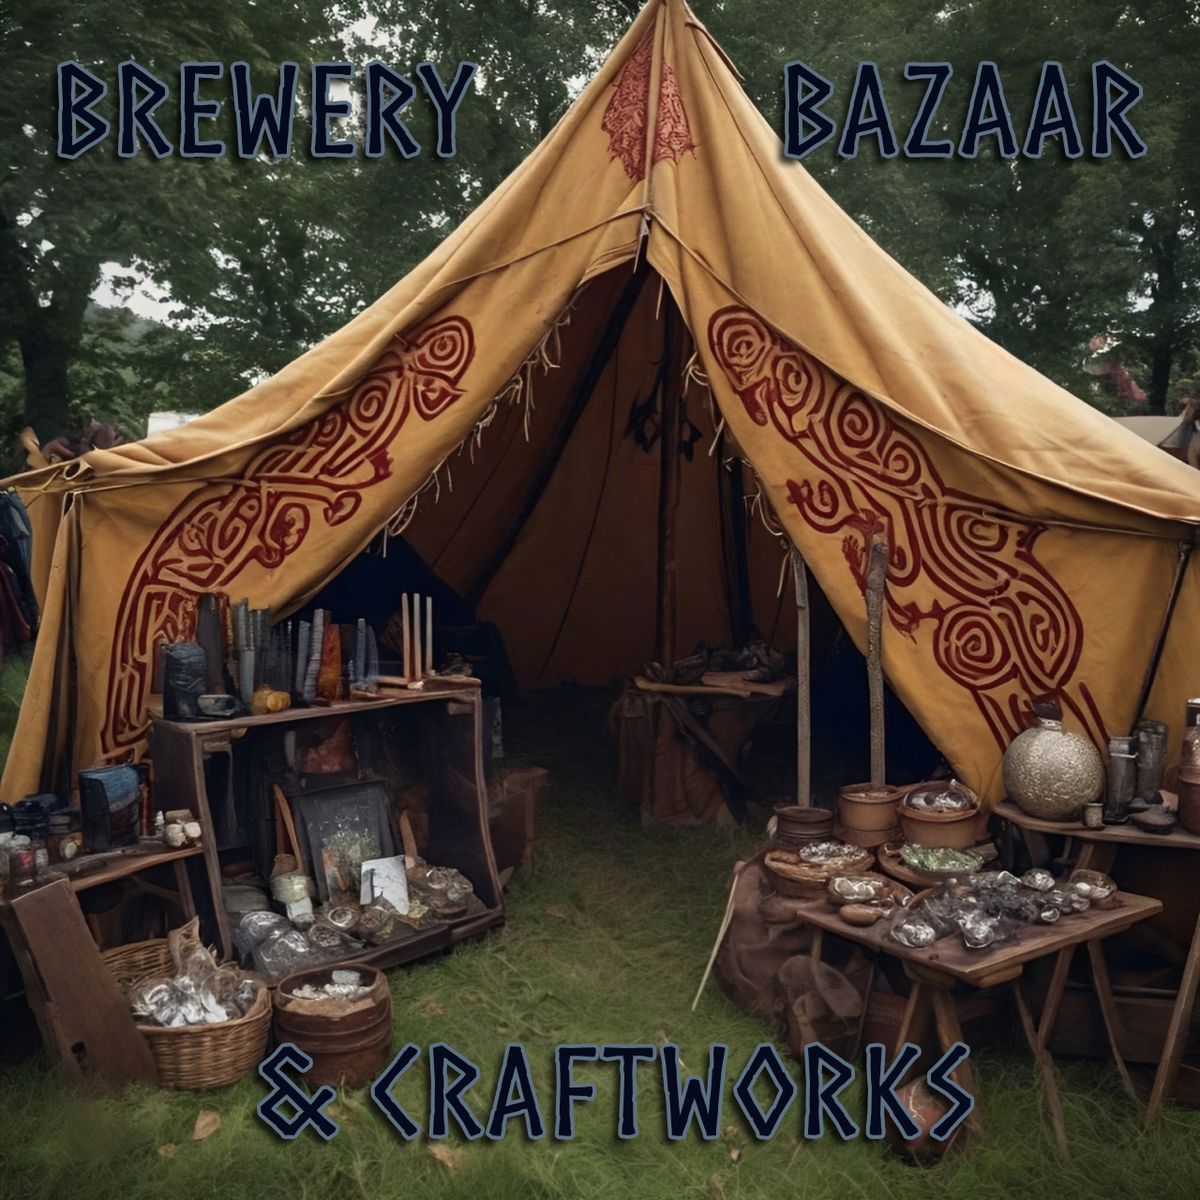 Brewery Bazaar & Craftworks 